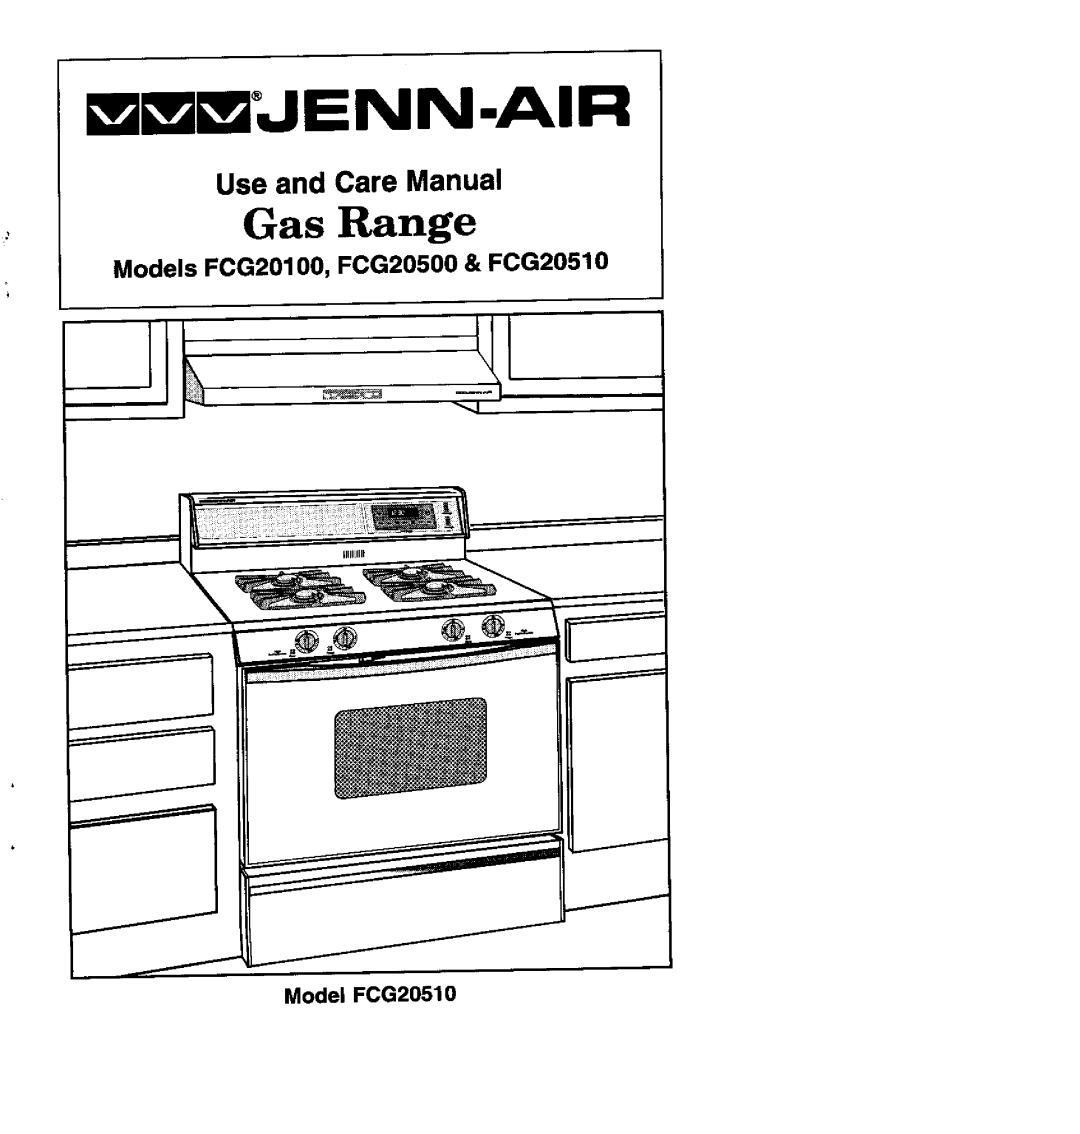 Jenn-Air manual EmmJENN.AIR, Models FCG20100, FCG20500 & FCG20510, Model FCG20510, Gas Range, Use and Care Manual 